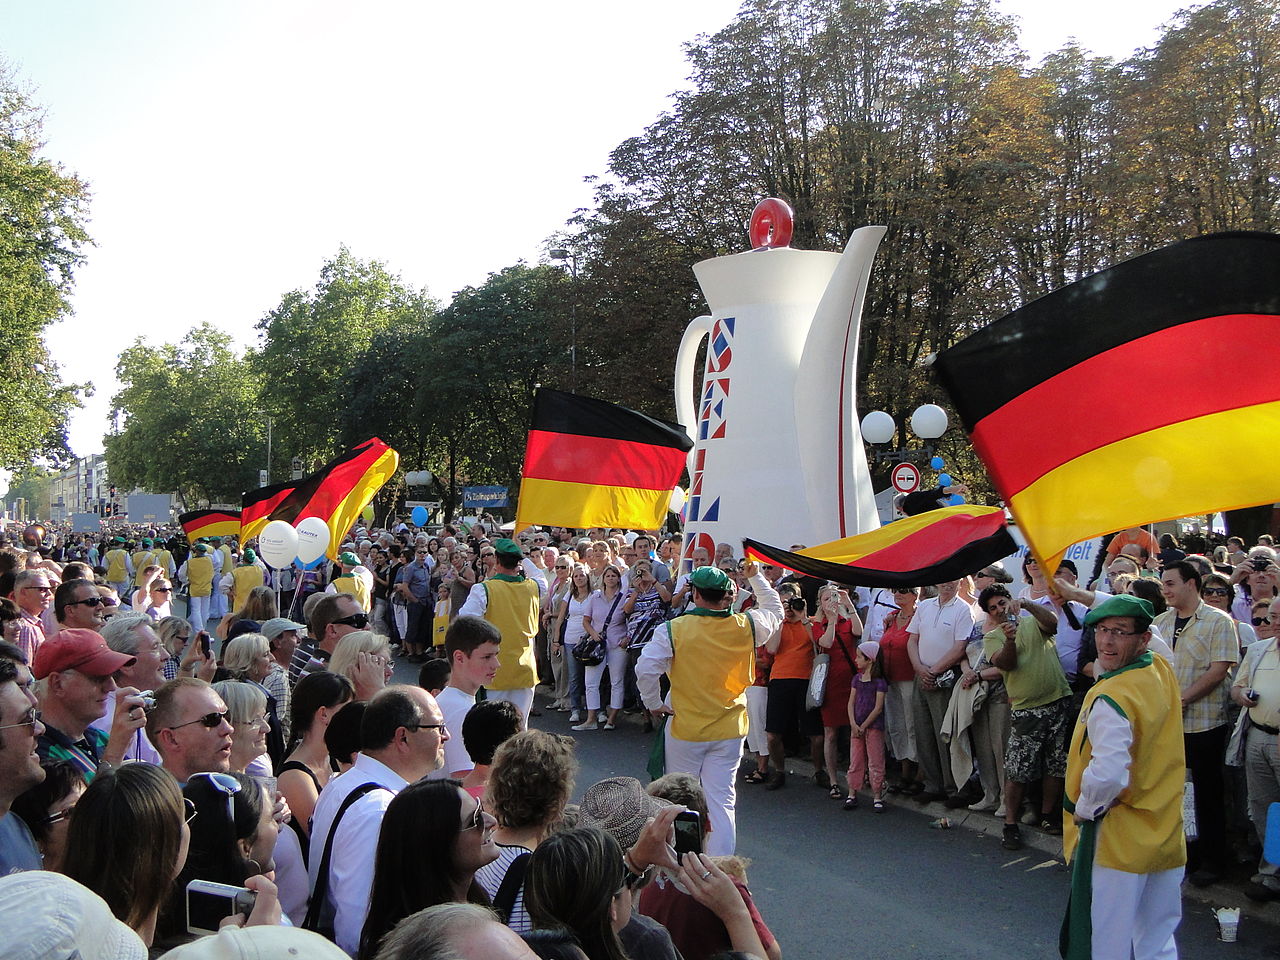 Auf dem Bild sind mehrere Menschen beim Deutschland·fest zu sehen